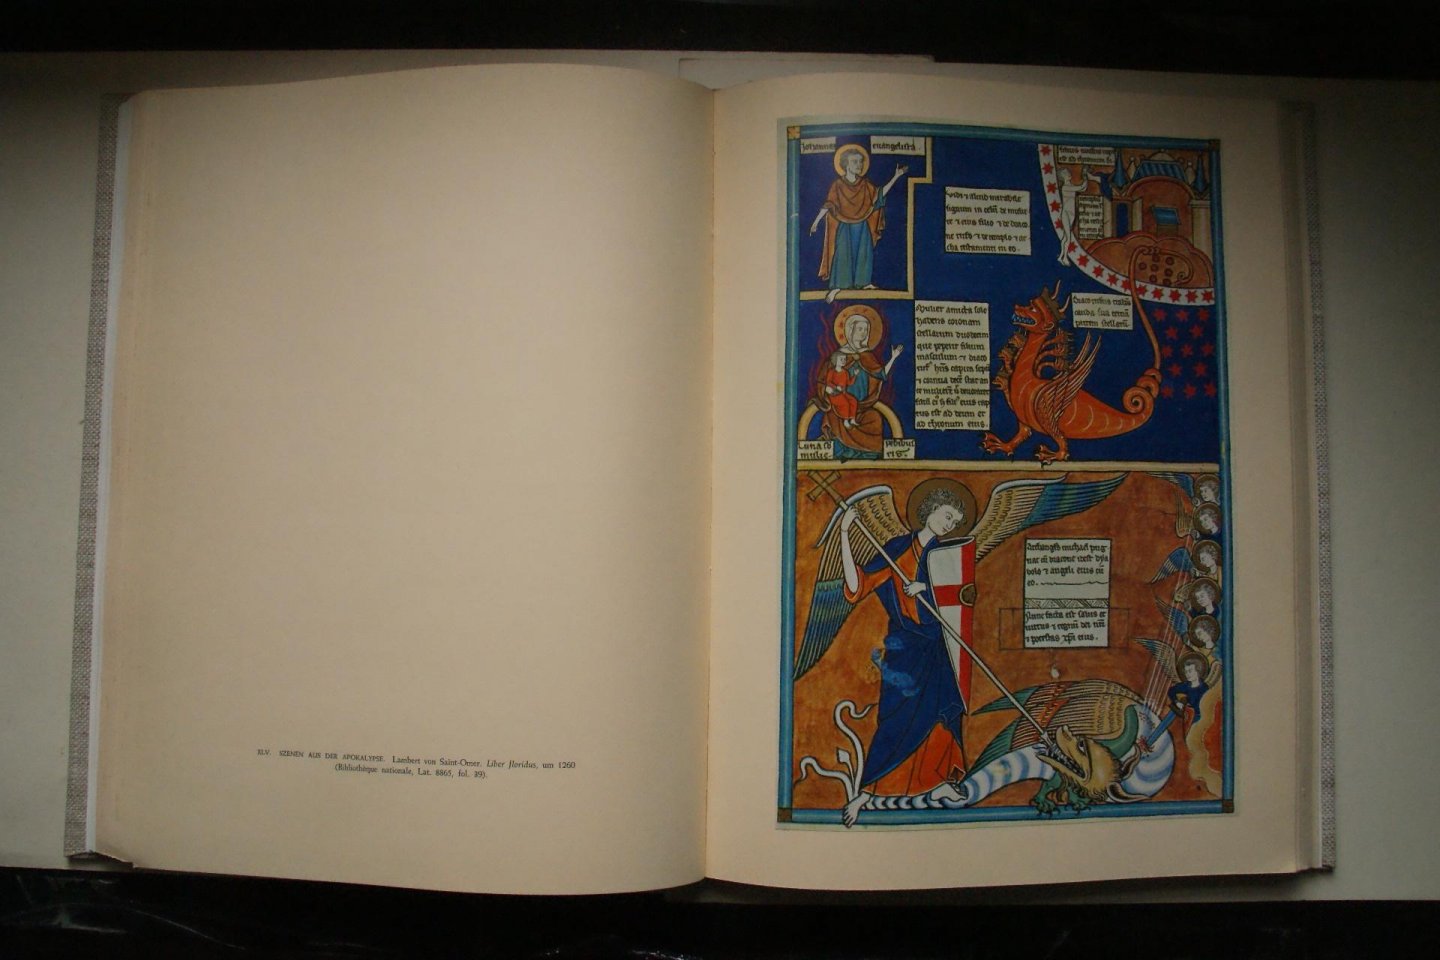 Porcher, Jean - autorisierte Ubertrachtung aus dem franzosischen  von Peter Ronge  Franzosische Buchmalerei